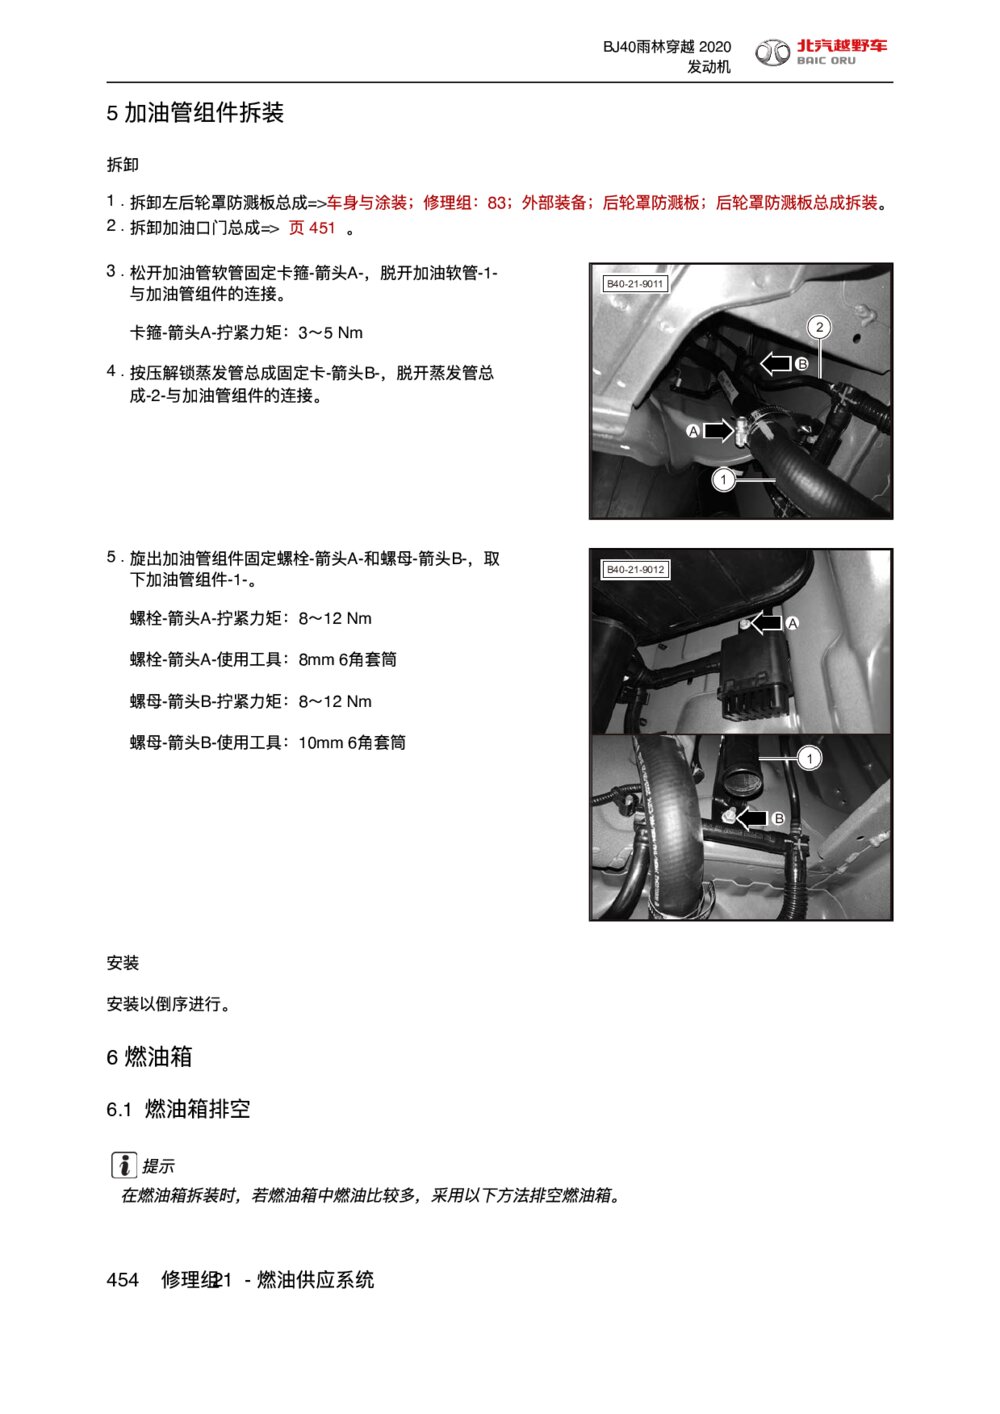 2020款北京BJ40雨林穿越版燃油箱拆装手册1